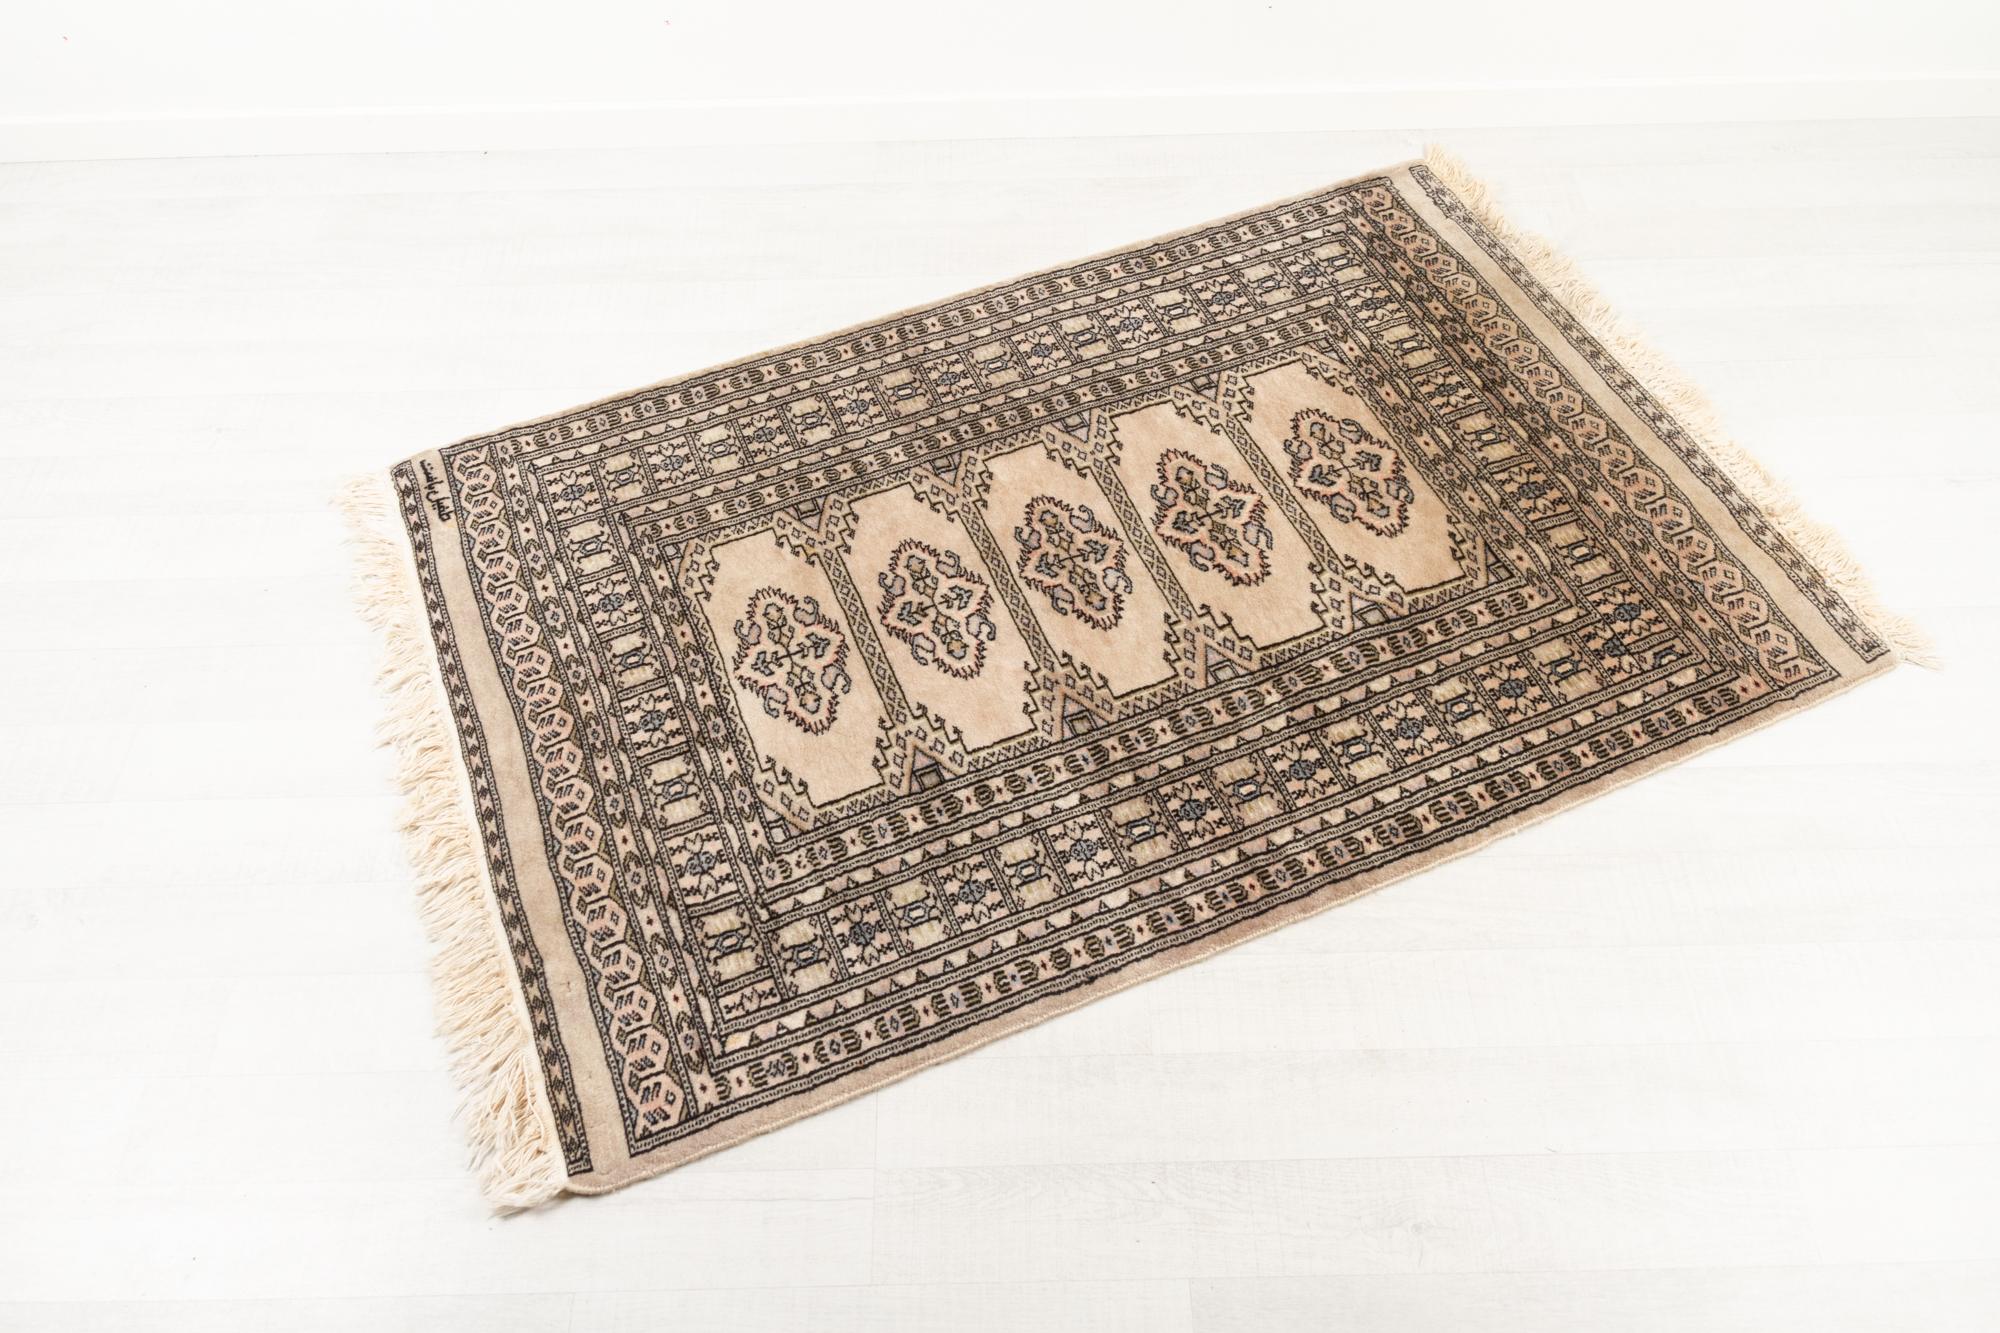 Vieux tapis Pakastani.
tapis 100% laine noué à la main de Lahore, au Pakistan, datant des années 1970. Signature dans le coin. 
Mesure 141 x 94 cm (155 cm avec les franges).
Seule une petite usure, de légères différences de nuances.